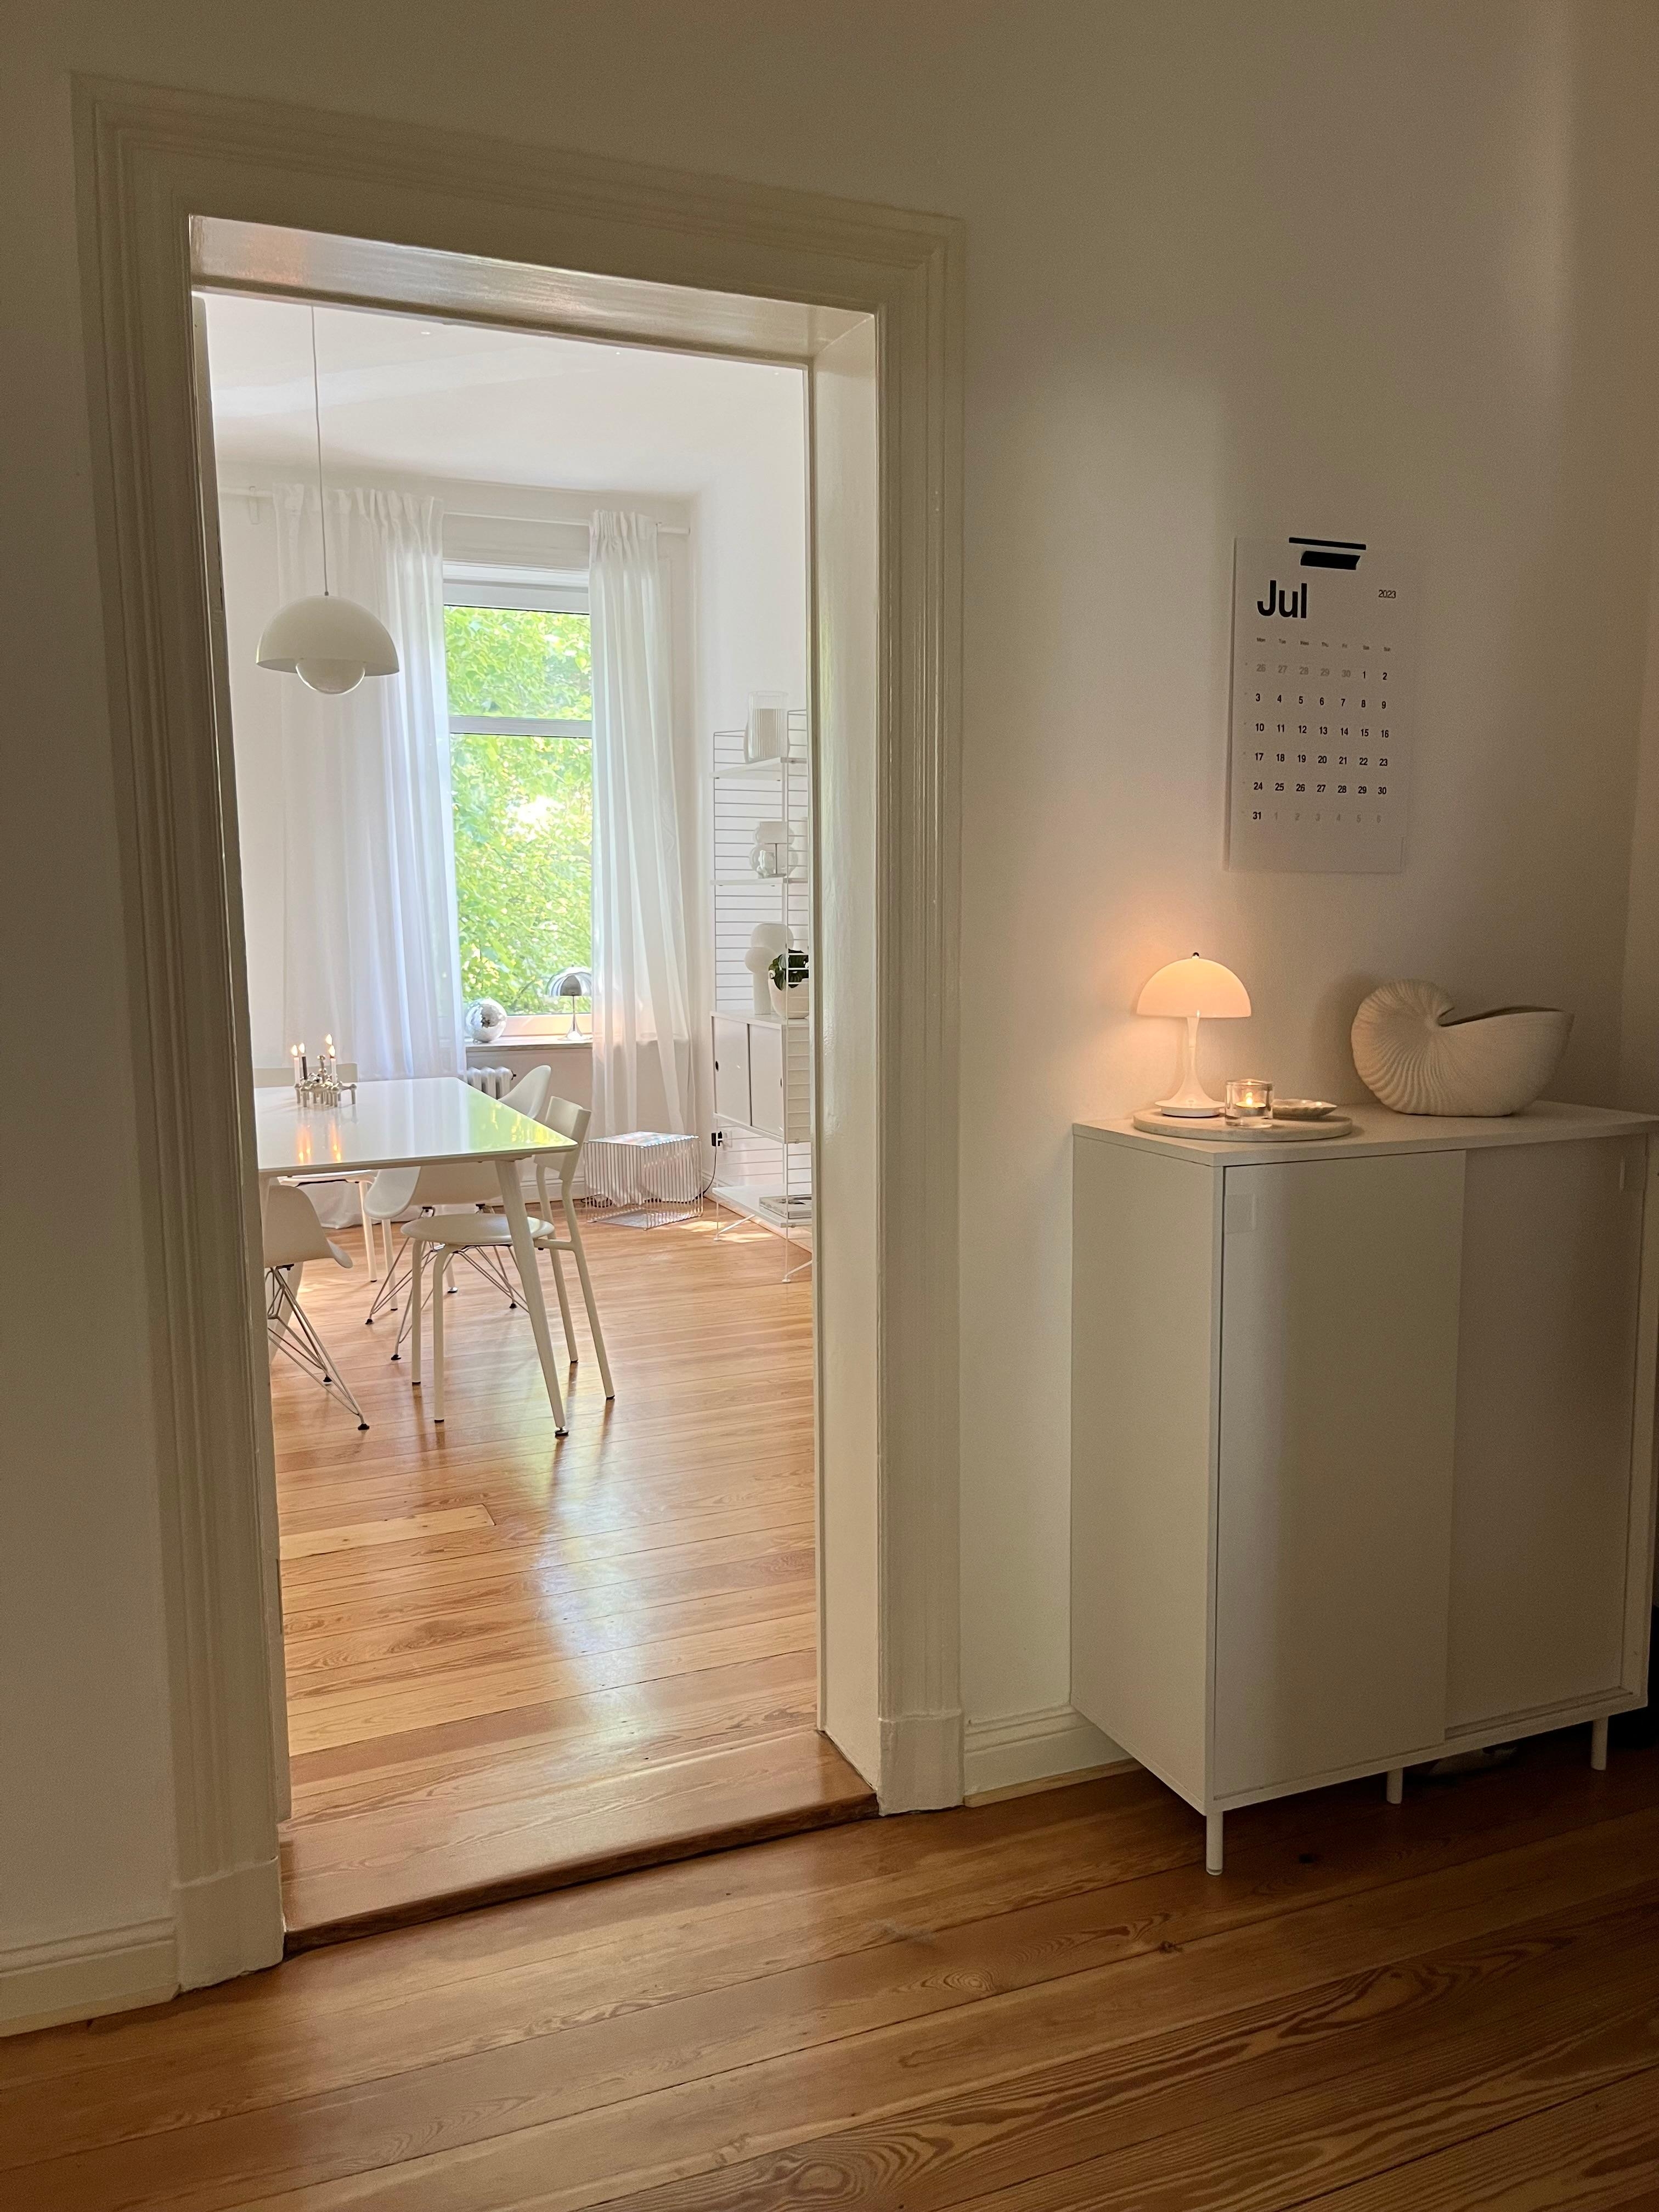 #altbauliebe #esszimmer #flur #skandinavischwohnen #minimalismus #leuchtenliebe #cozy 